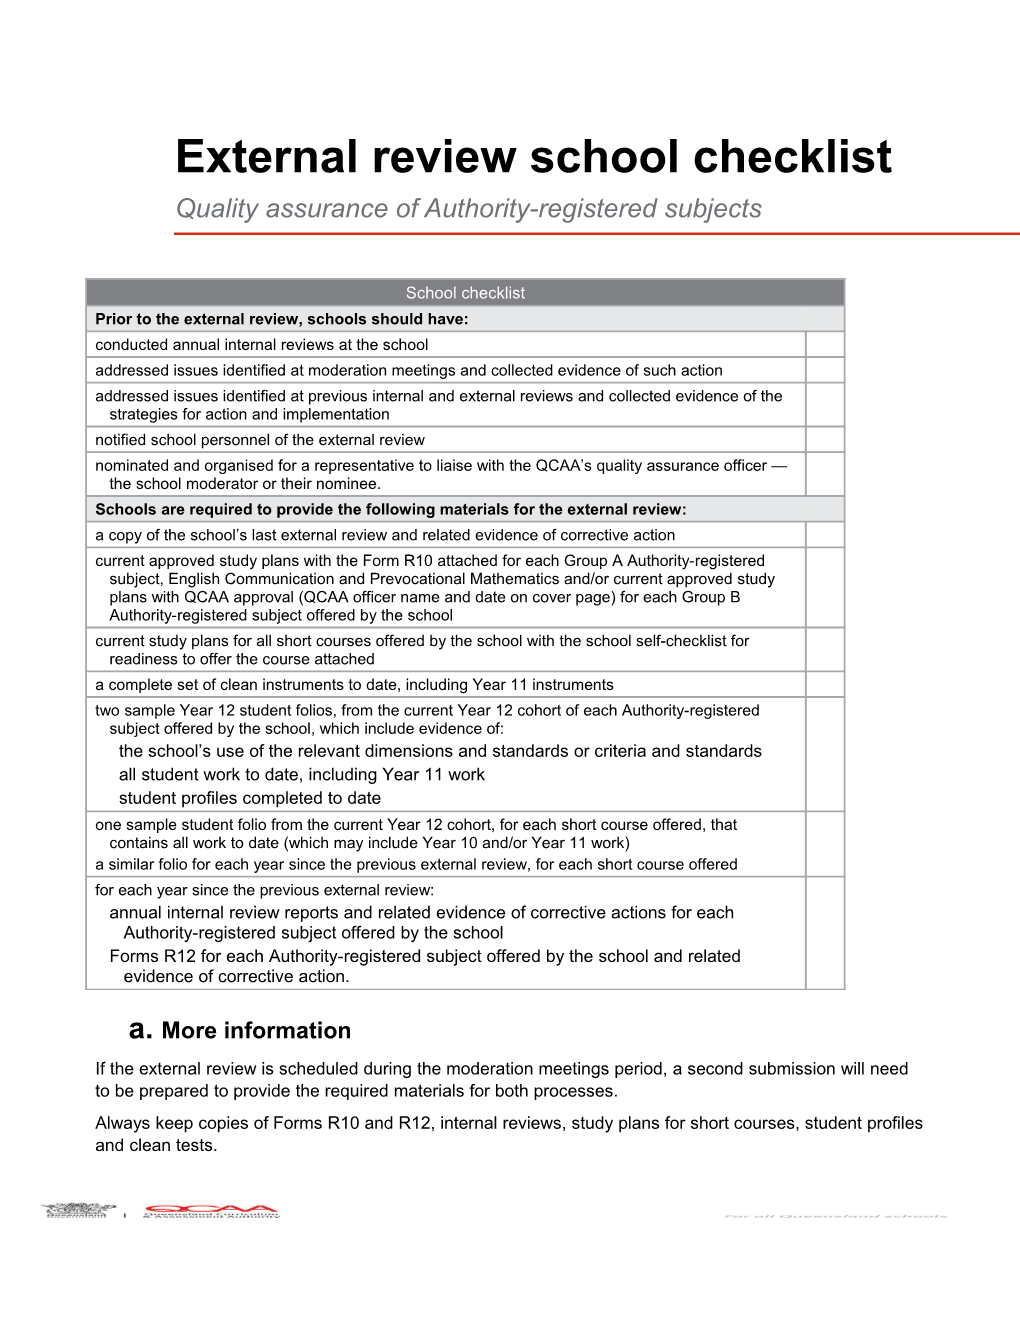 External Review School Checklist